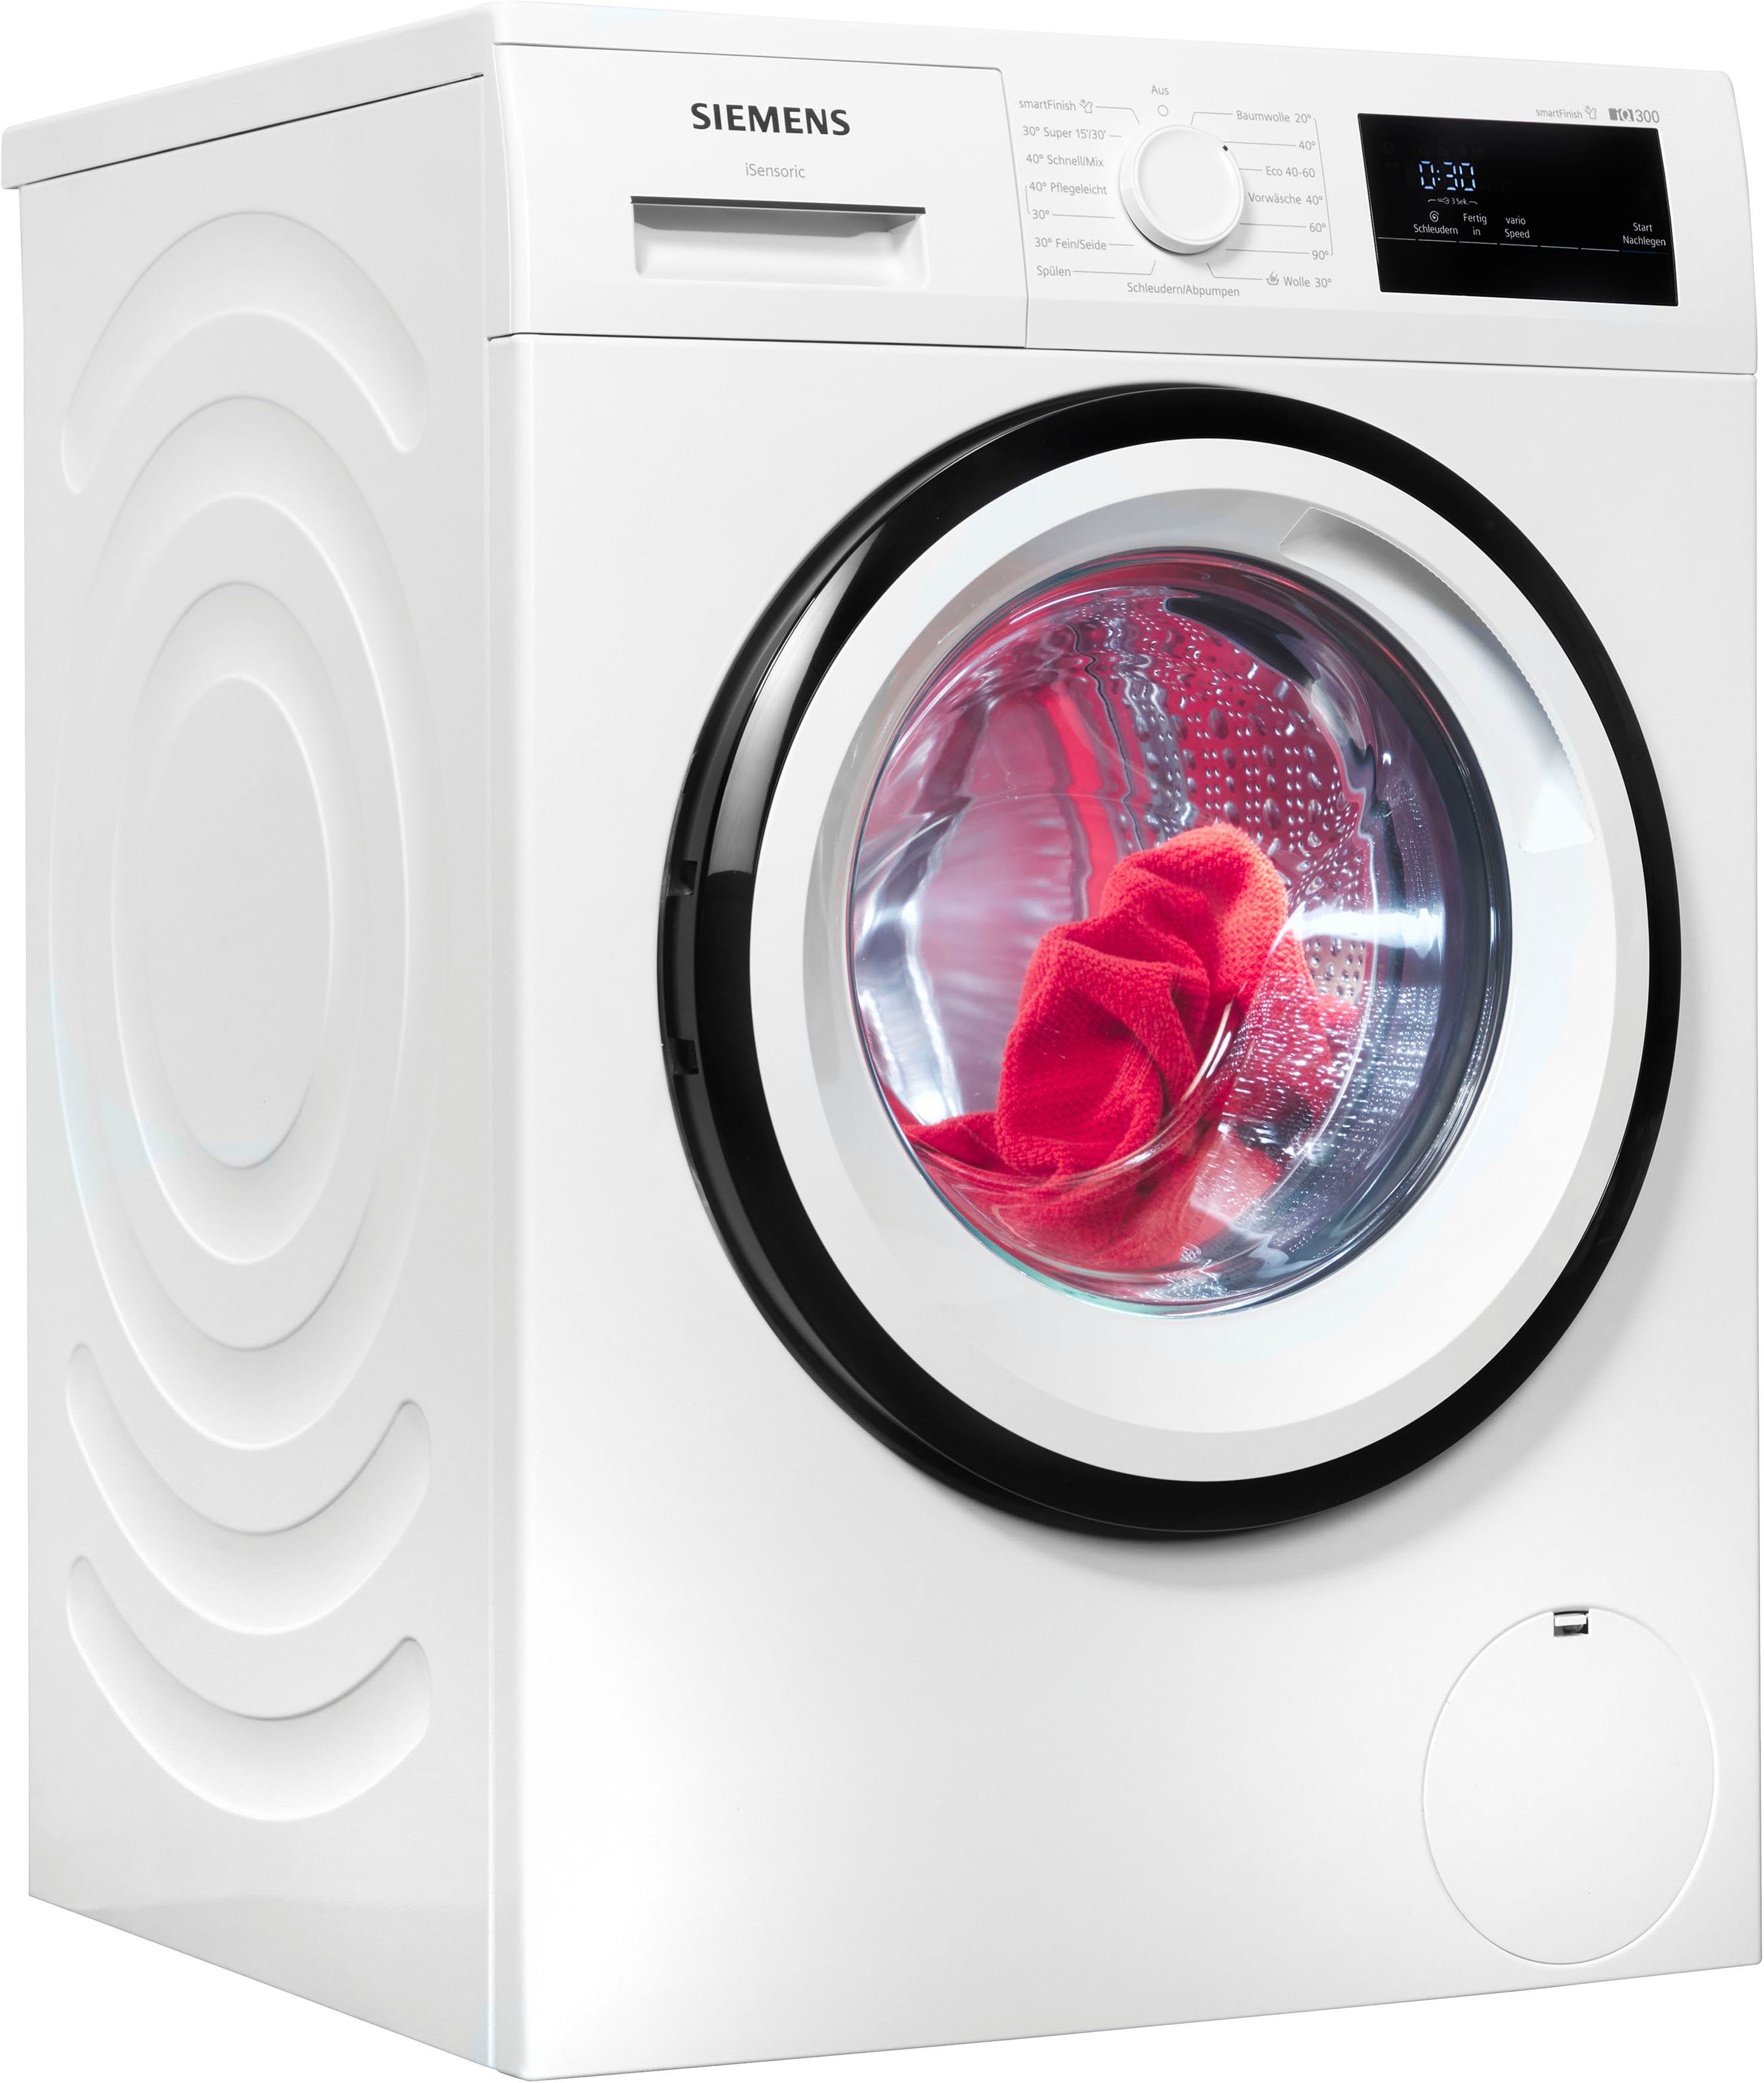 kg, WM14N0A4, 1400 8 – Knitterfalten smartFinish SIEMENS sämtliche Waschmaschine dank Dampf iQ300 U/min, glättet